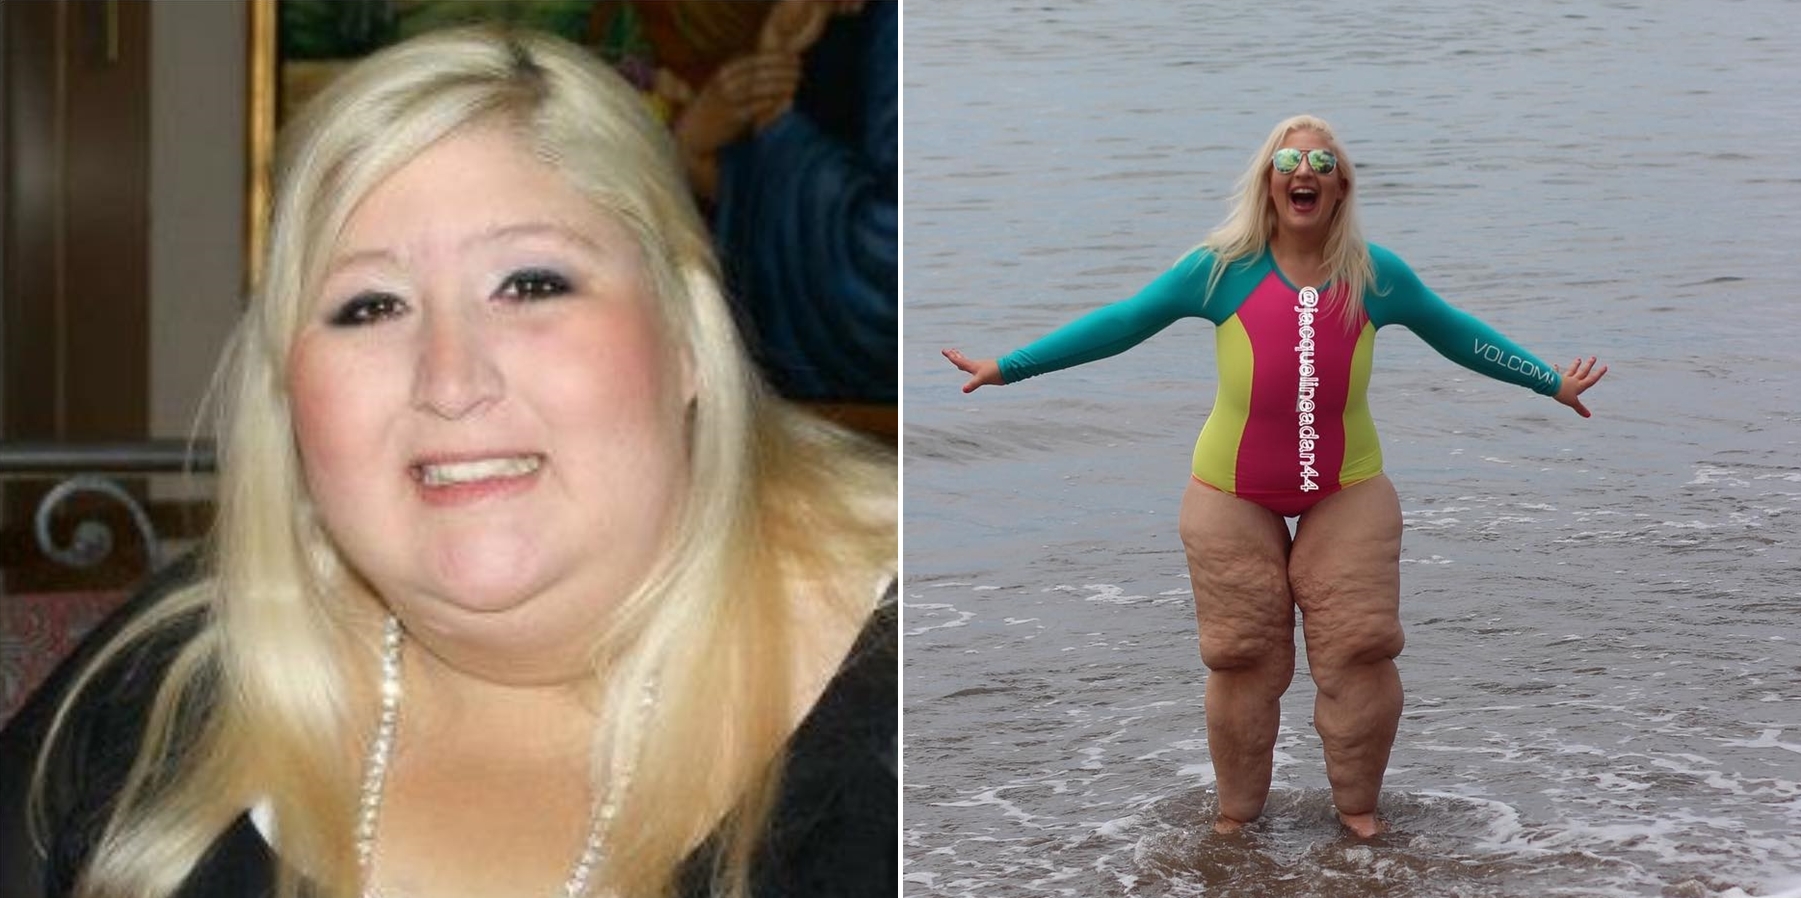 สาวลดน้ำหนักลงได้ 158 กิโลแต่ยังมี ‘ขาย้วย’ โดนคนหัวเราะเยาะ เธอเลยตอบกลับซะหน้าหงาย!!